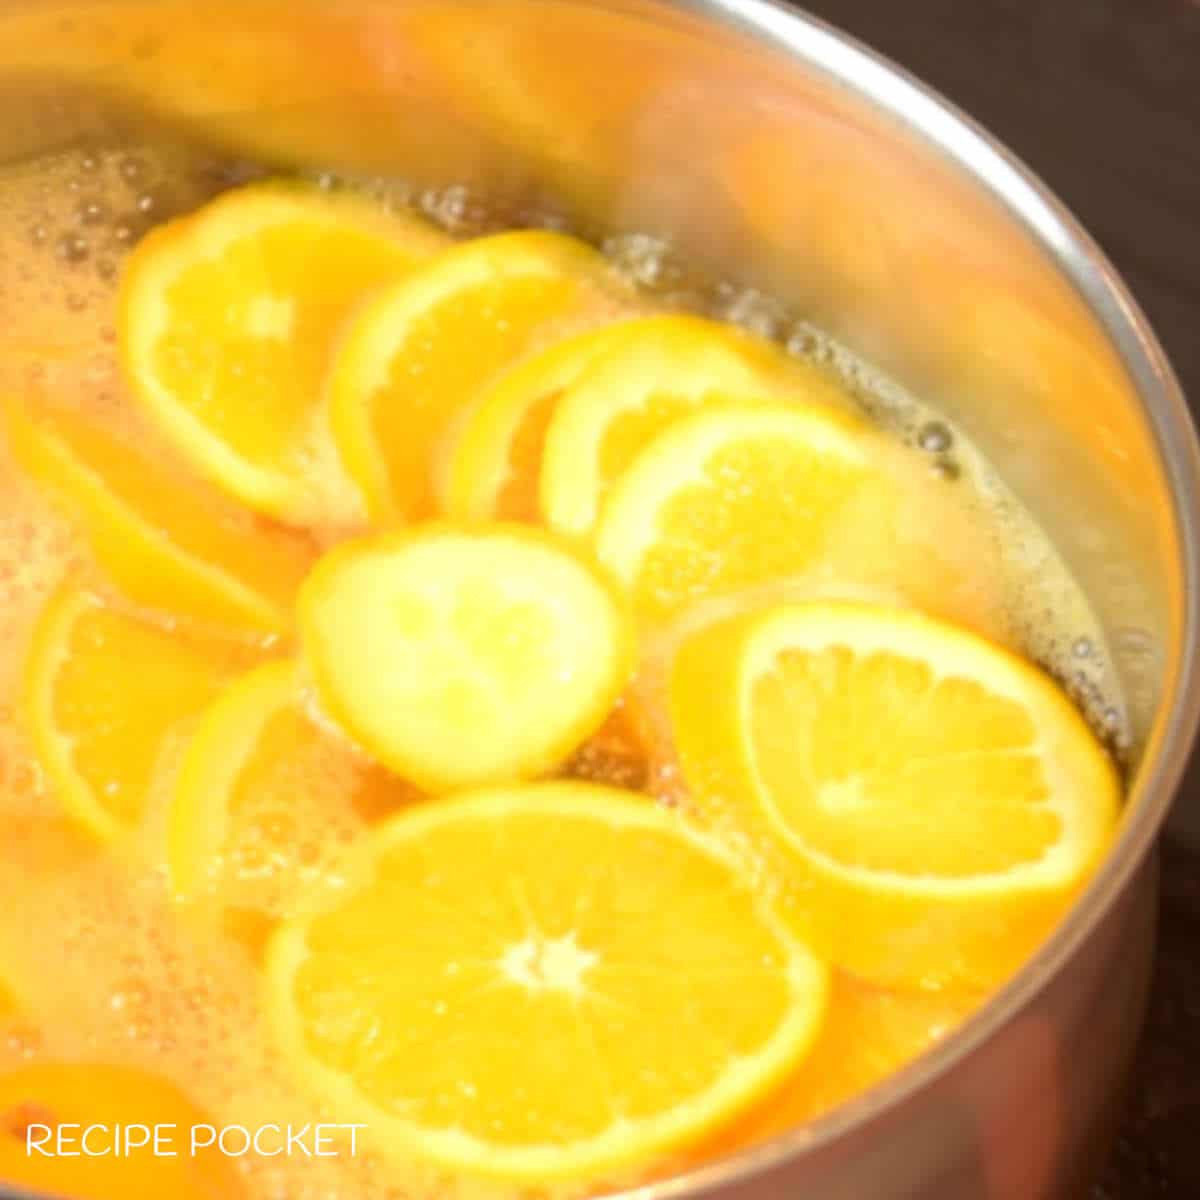 Orange slices ing boiling water.